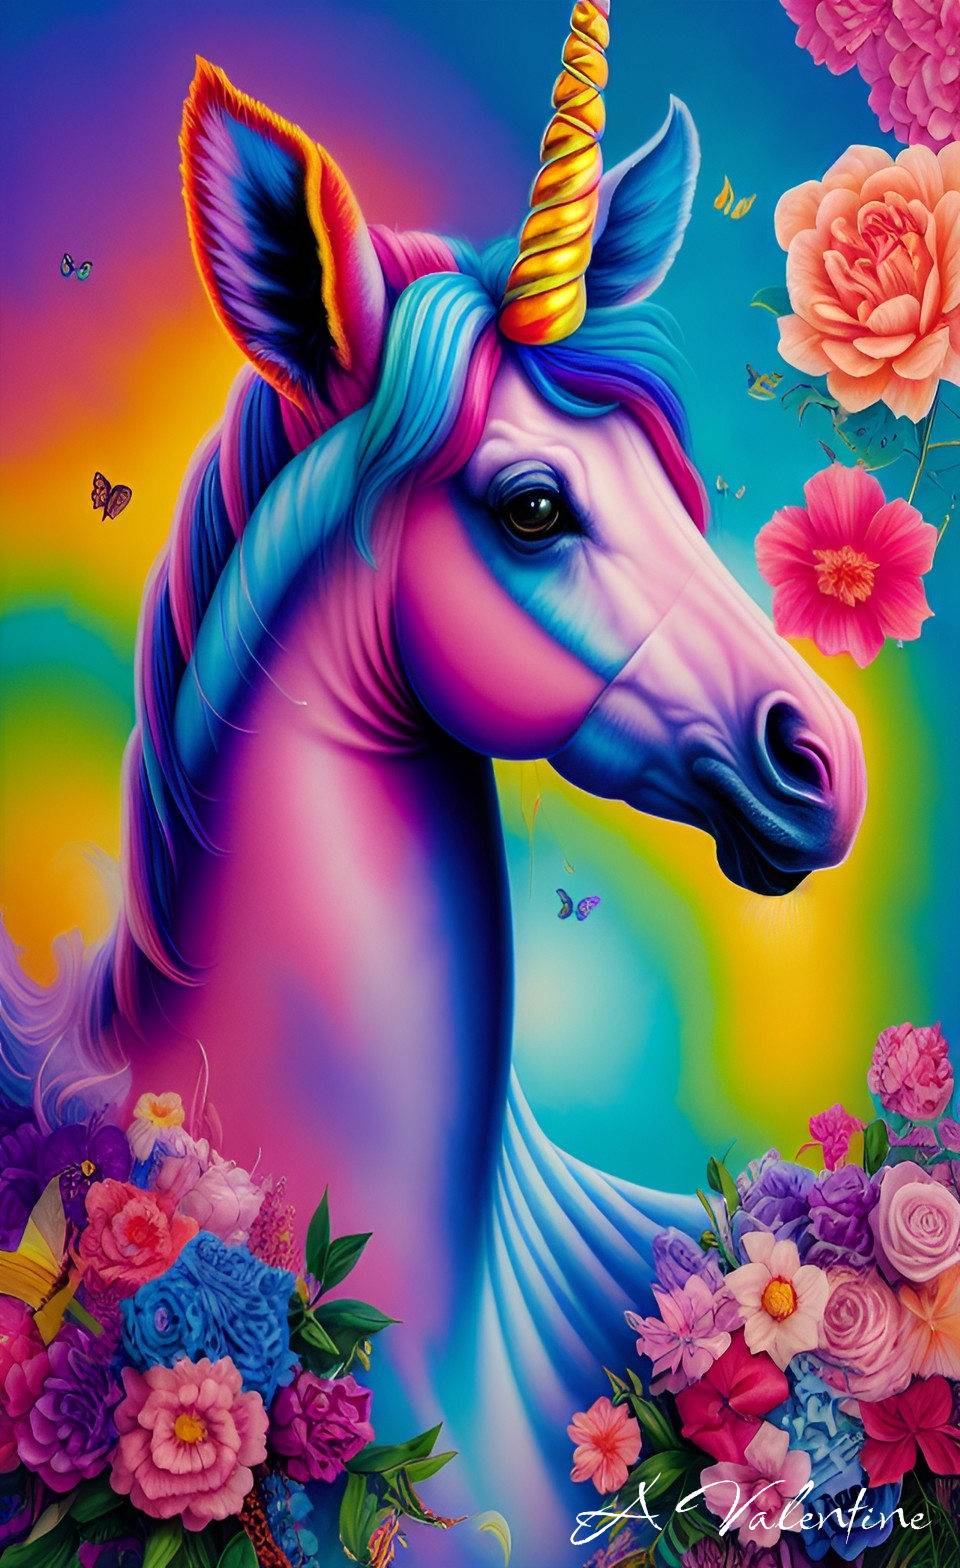 Lisa Frank Inspired Unicorn